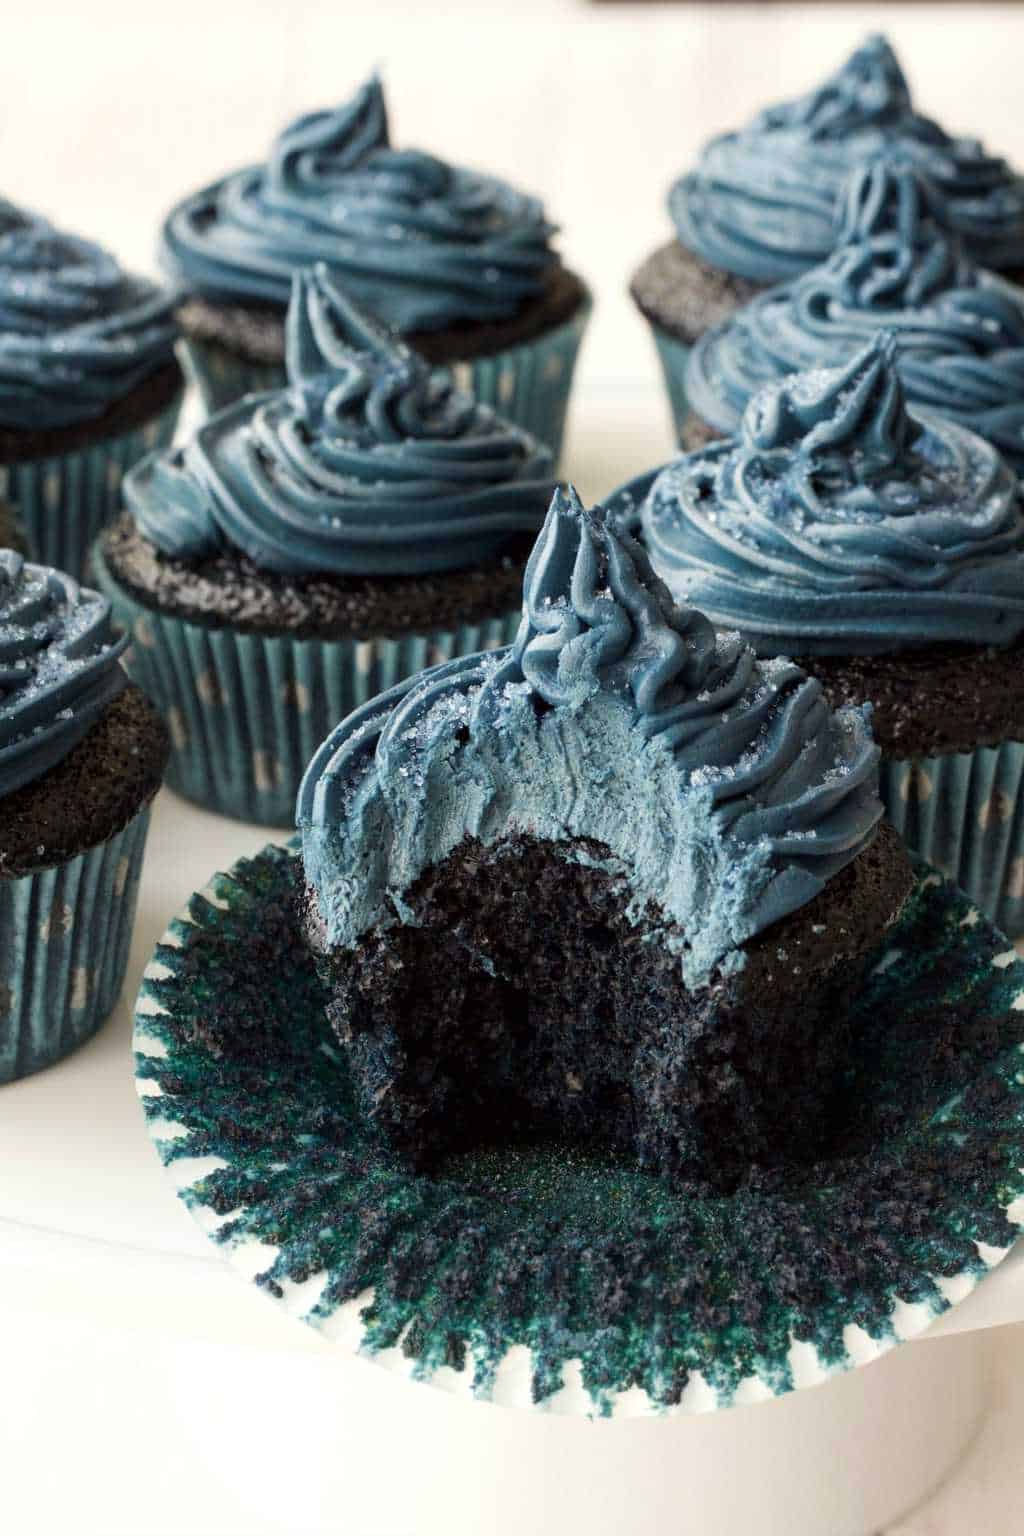 Blue Velvet Cupcakes with Blue Velvet Frosting - Moist, spongey, velvety and delicious! #vegan #lovingitvegan #bluevelvet #cupcakes #dessert